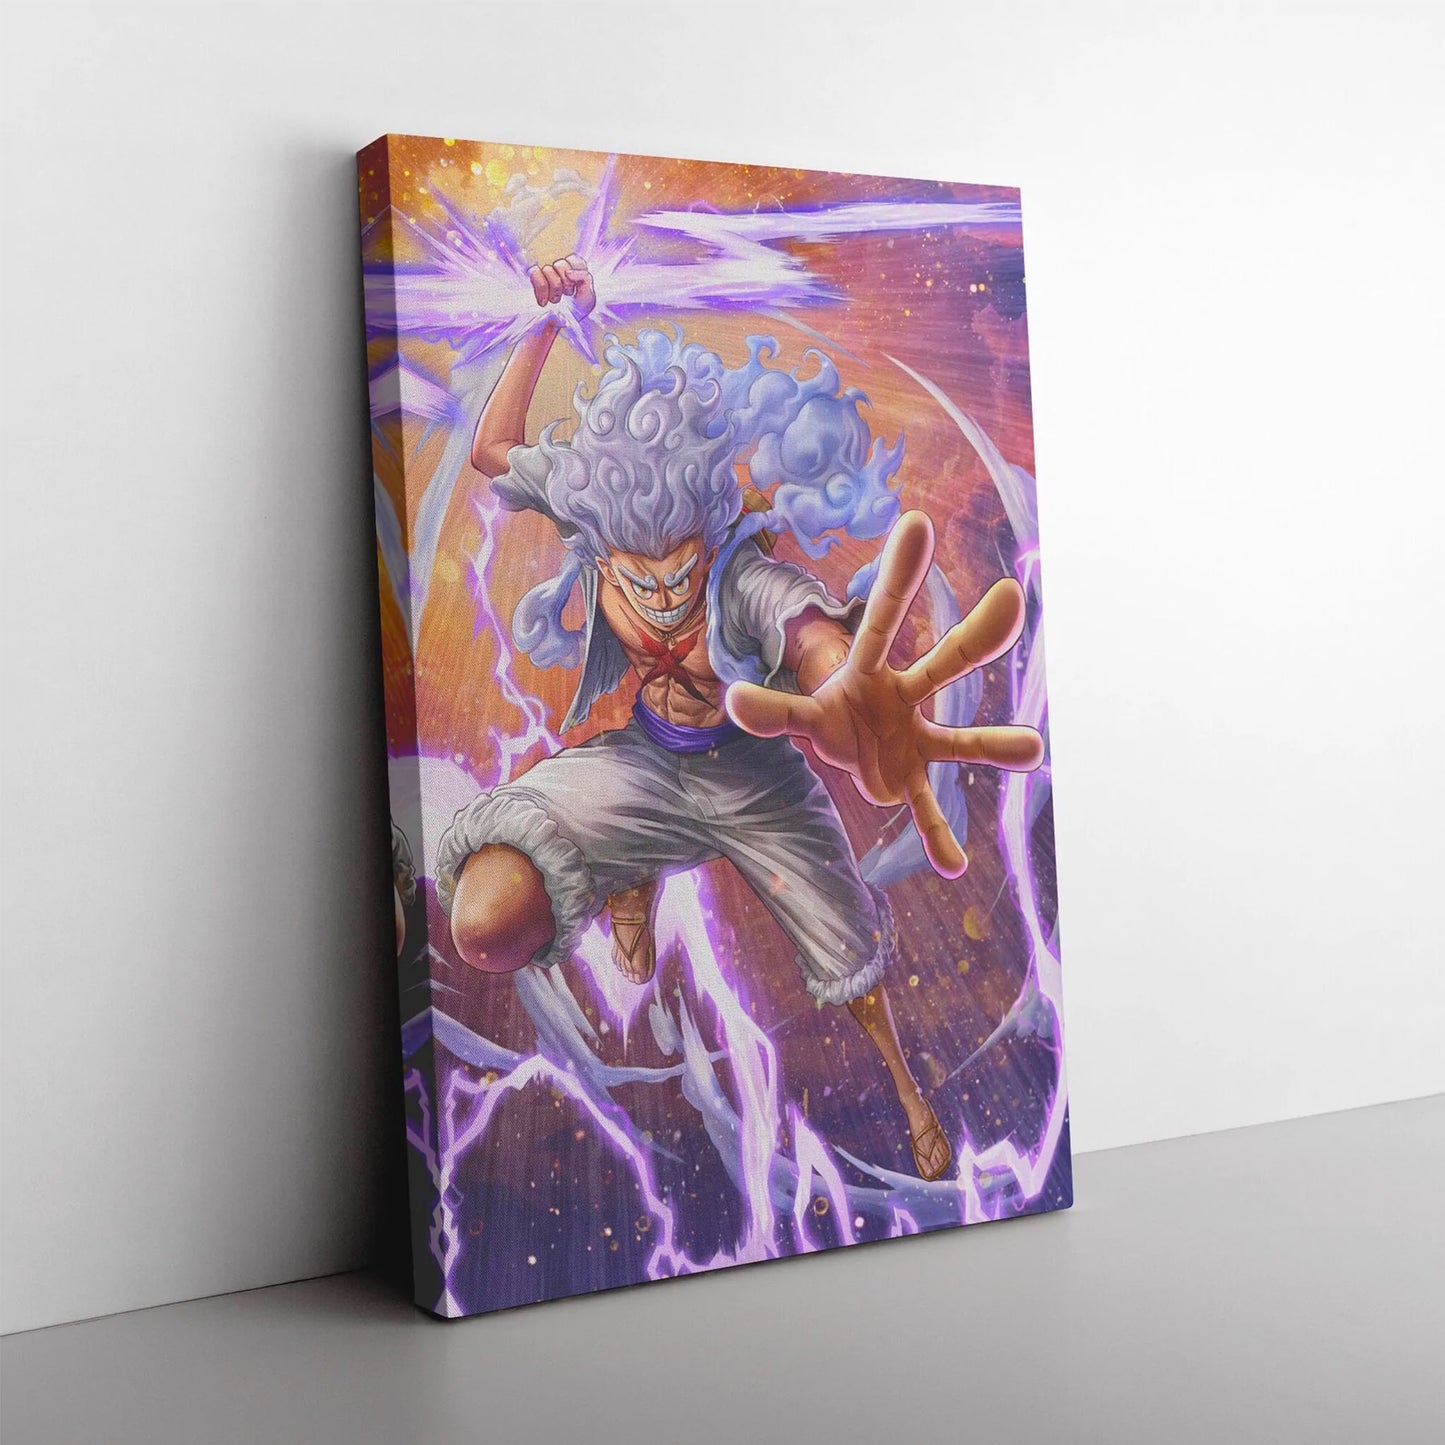 Gear 5 - Monkey D luffy Art Board Print for Sale by SevenYero